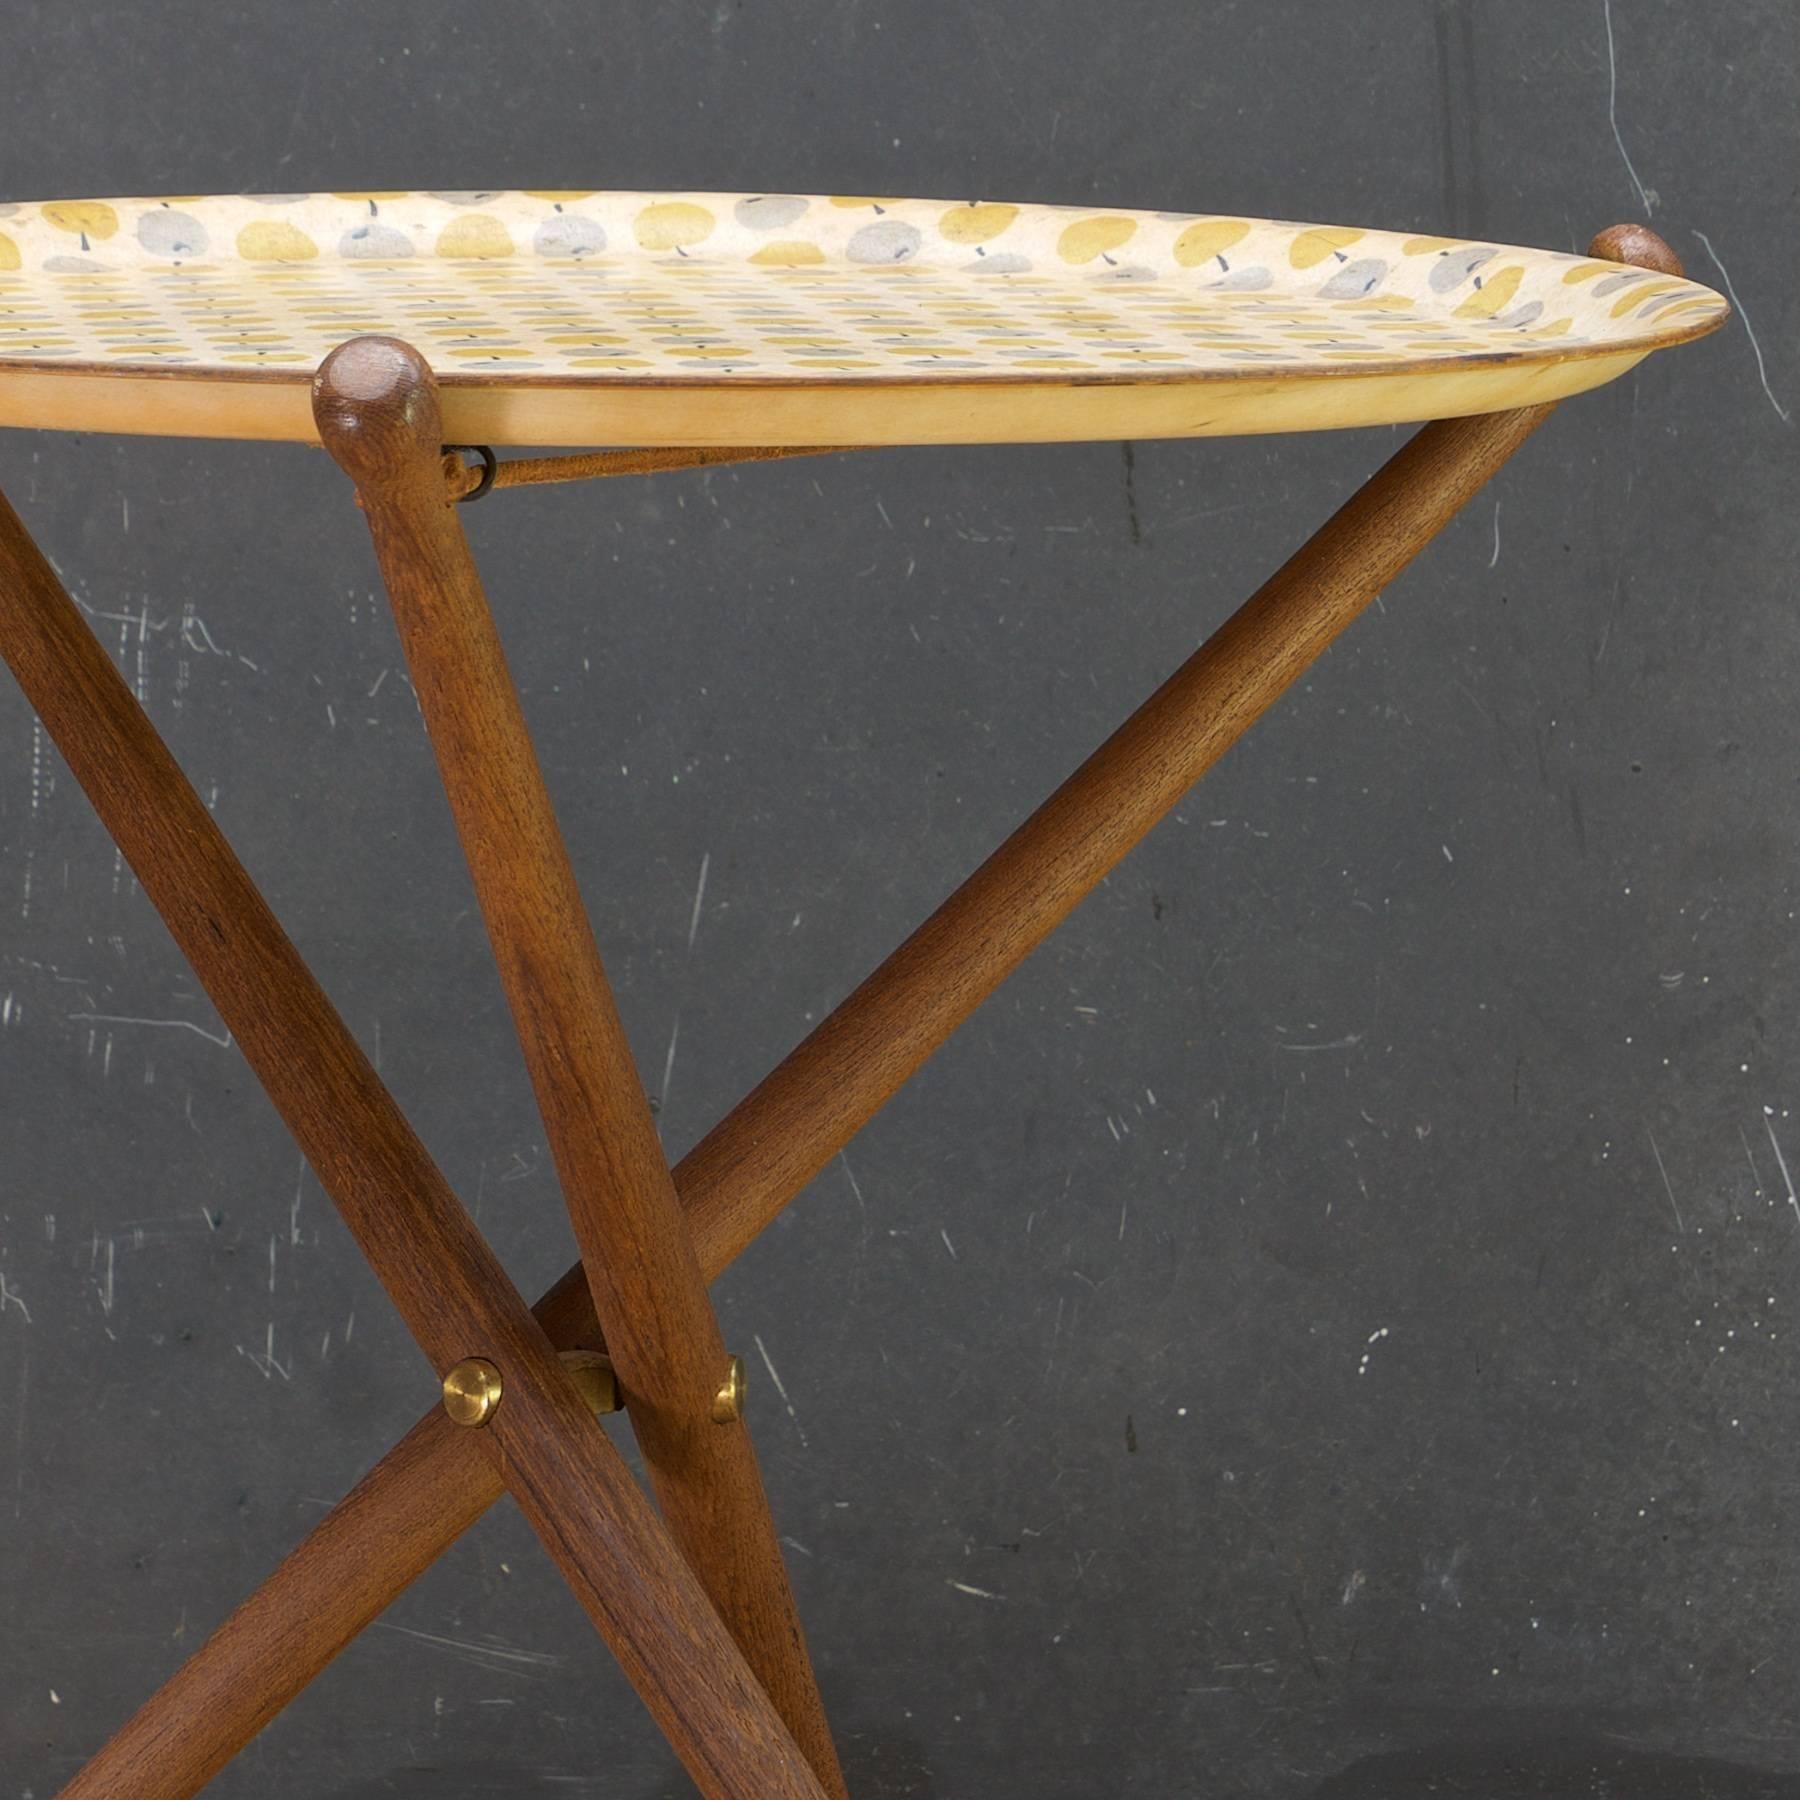 Nils Trautner Dreibein-Tischgestelle aus Teakholz, kombiniert mit einem in Schweden hergestellten Tablett mit buntem Apfelmuster, entworfen von Astrid Sampe. 

Maße: Dia 17 3/8 x H 17 3/8 in.